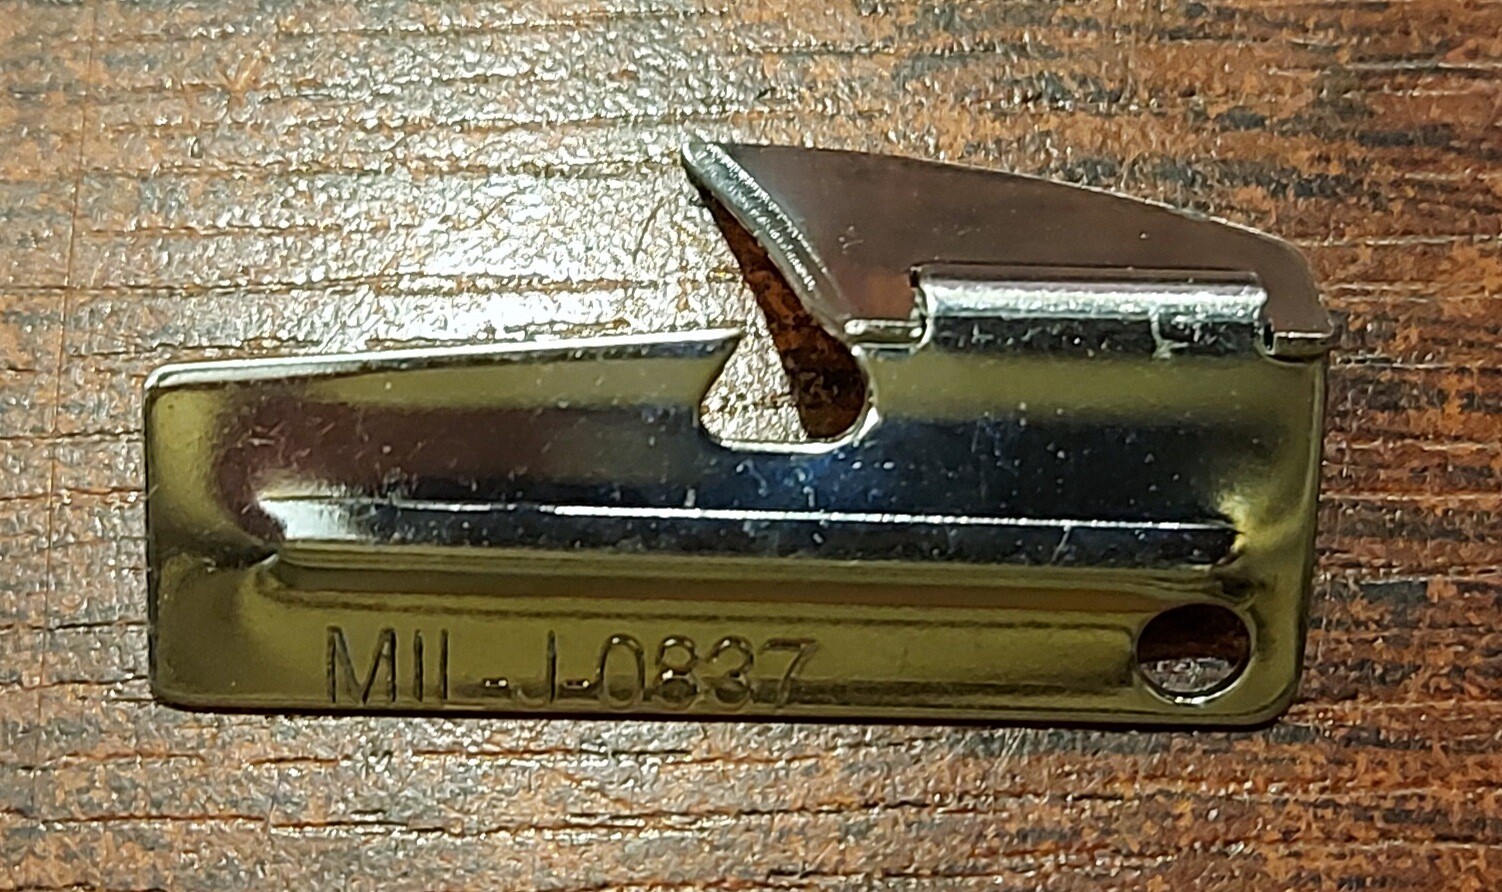 Mil-Tec - Otwieracz MIL - J - 0837 - Srebrny